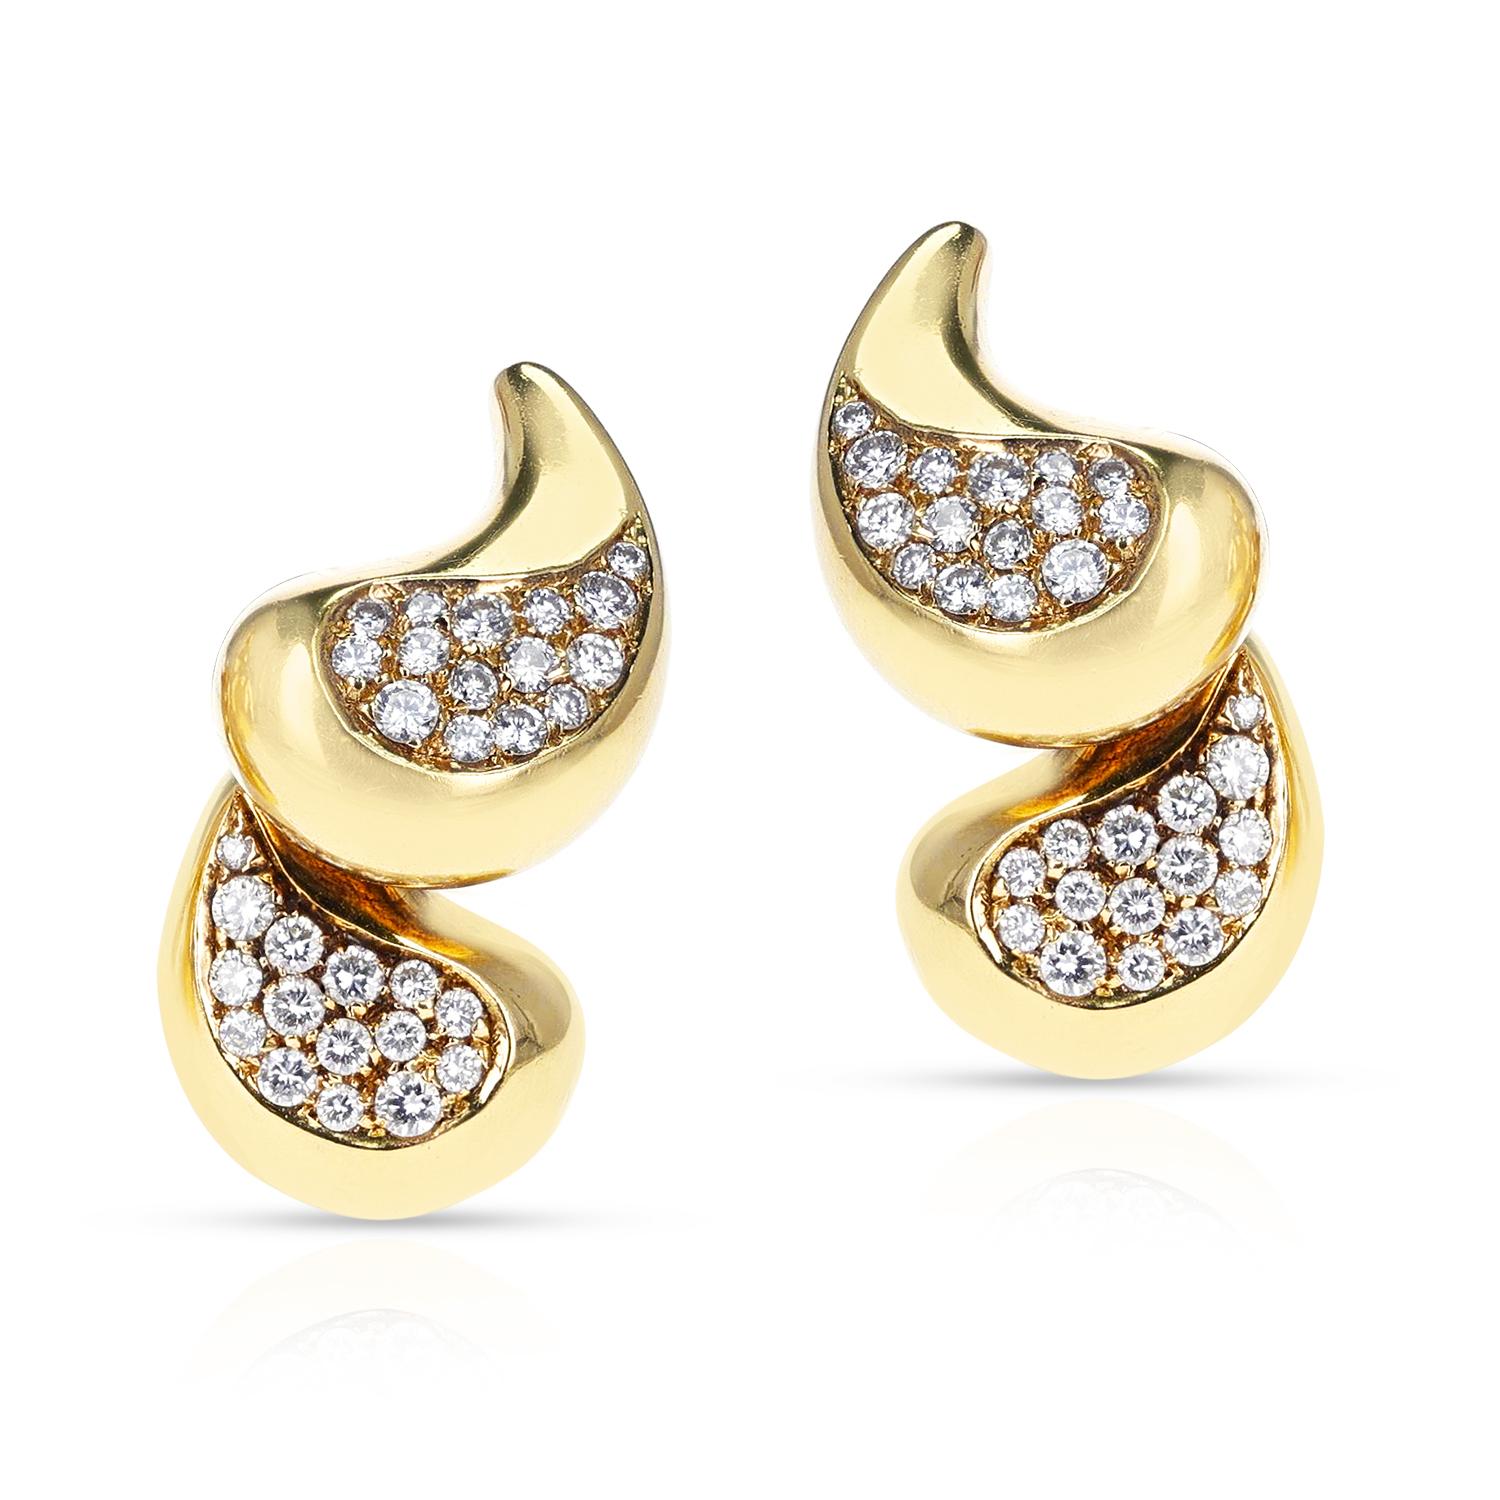 Ein Paar stilvolle Marina B Diamant- und Goldohrringe aus 18 Karat Gelbgold.
Das Gesamtgewicht der Ohrringe beträgt 25,28 Gramm. Die Länge des Ohrrings beträgt 1,20 Zoll.
